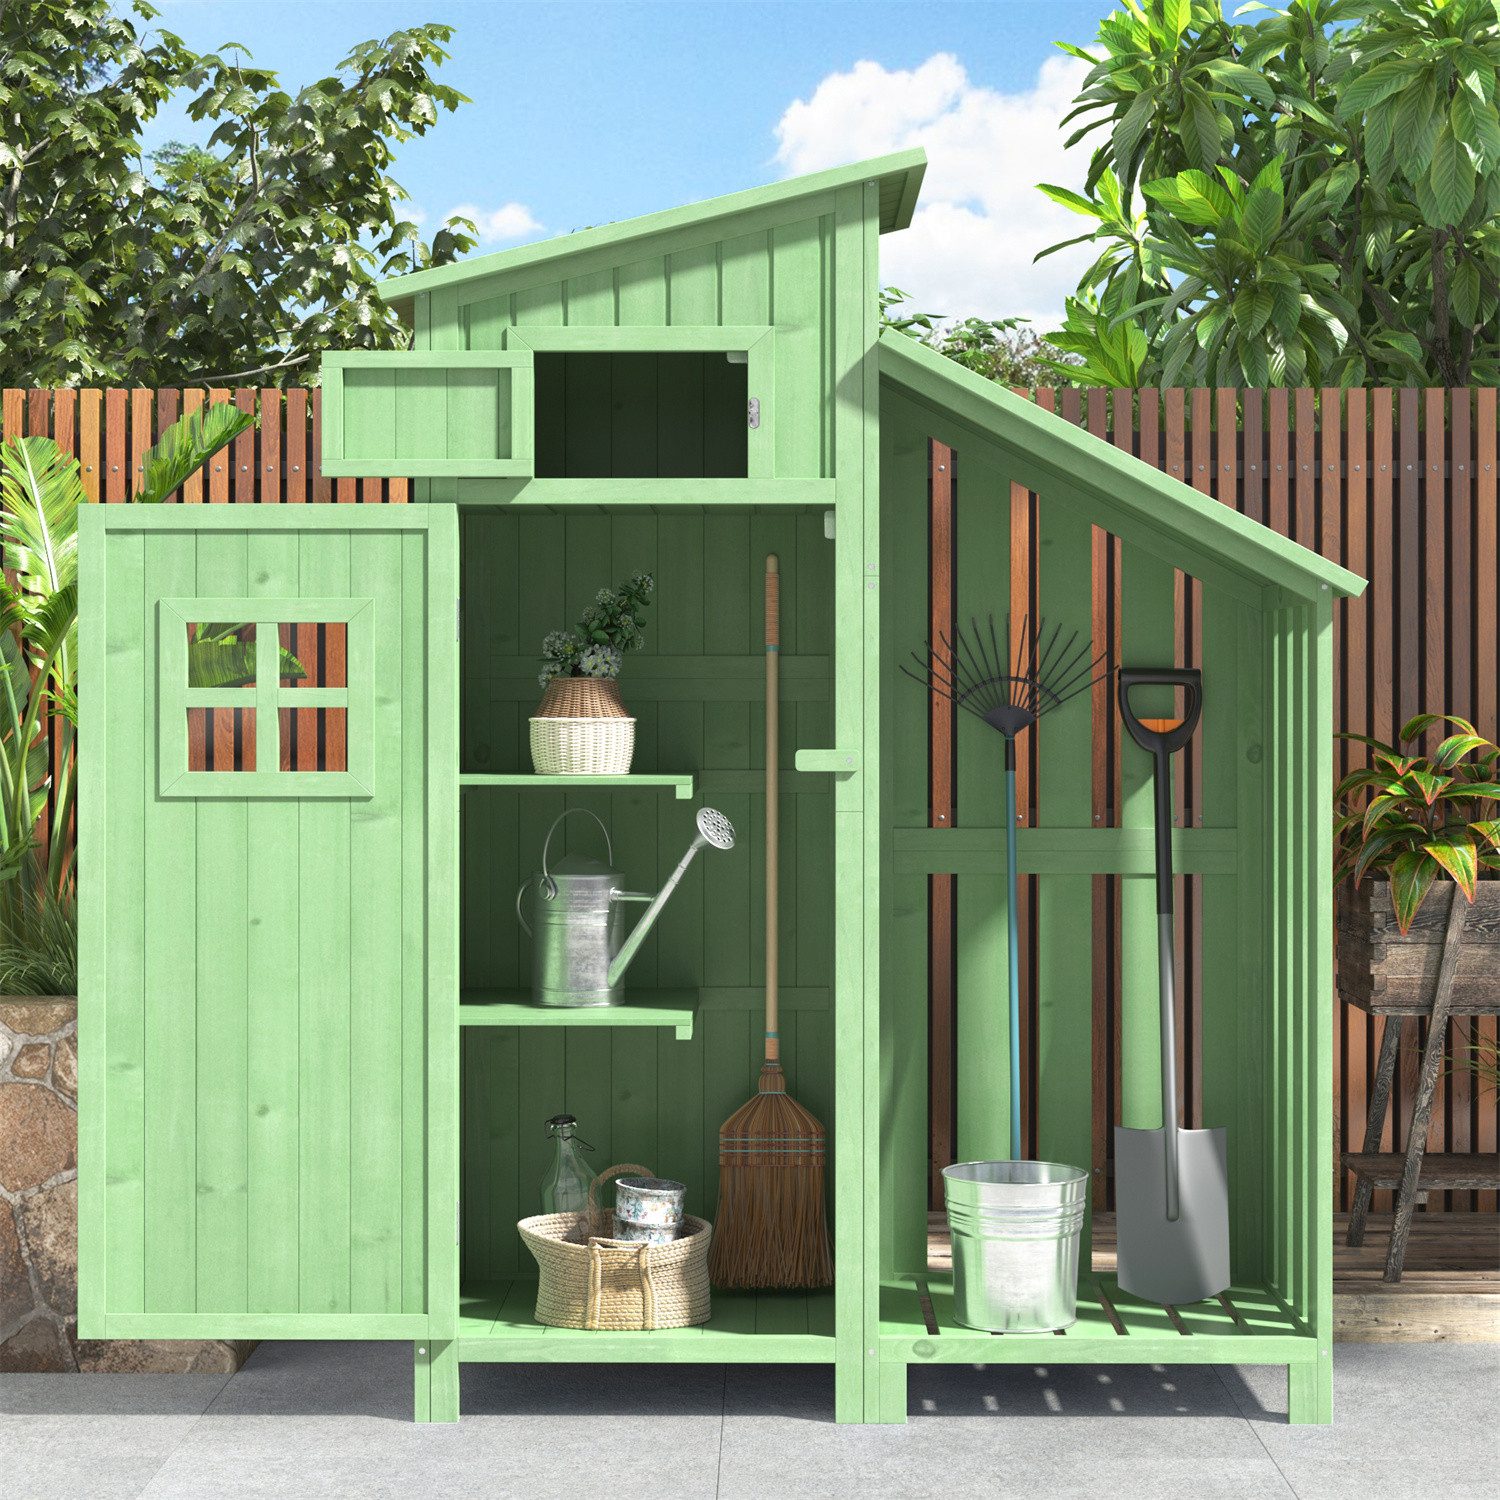 autolock (Grün,Holzhütte)Gartenschrank mit PVC-Dach, Geräteschuppen Geräteschrank mit Satteldach,124x46x174cm    Gruen  (RABATT 38%)